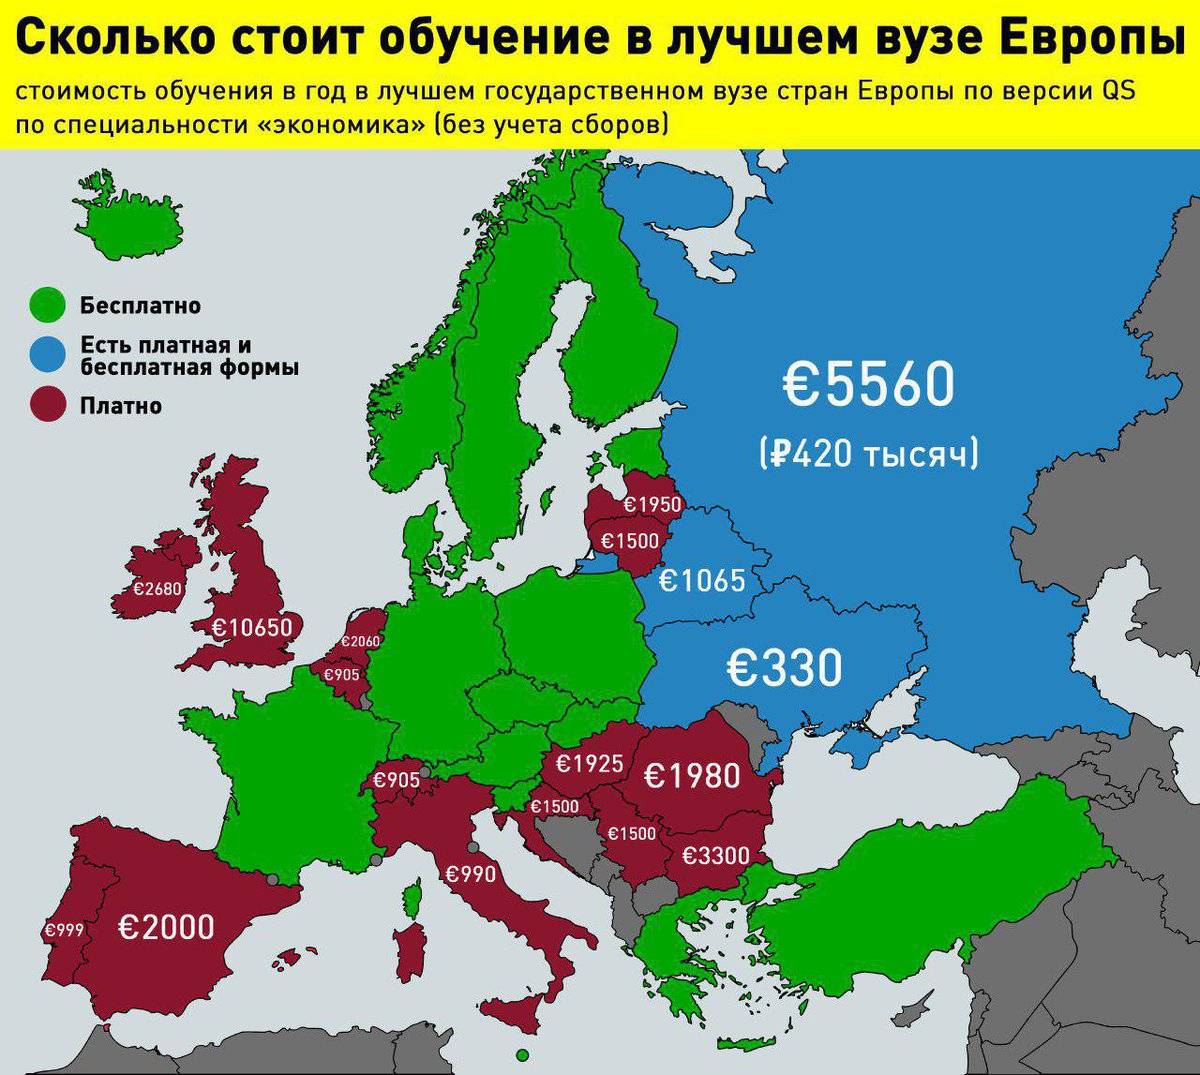 Сколько существует европа. Уровни образования в Европе. Карта Европы со странами. Страны где бесплатное высшее образование. Образование стран Европы.